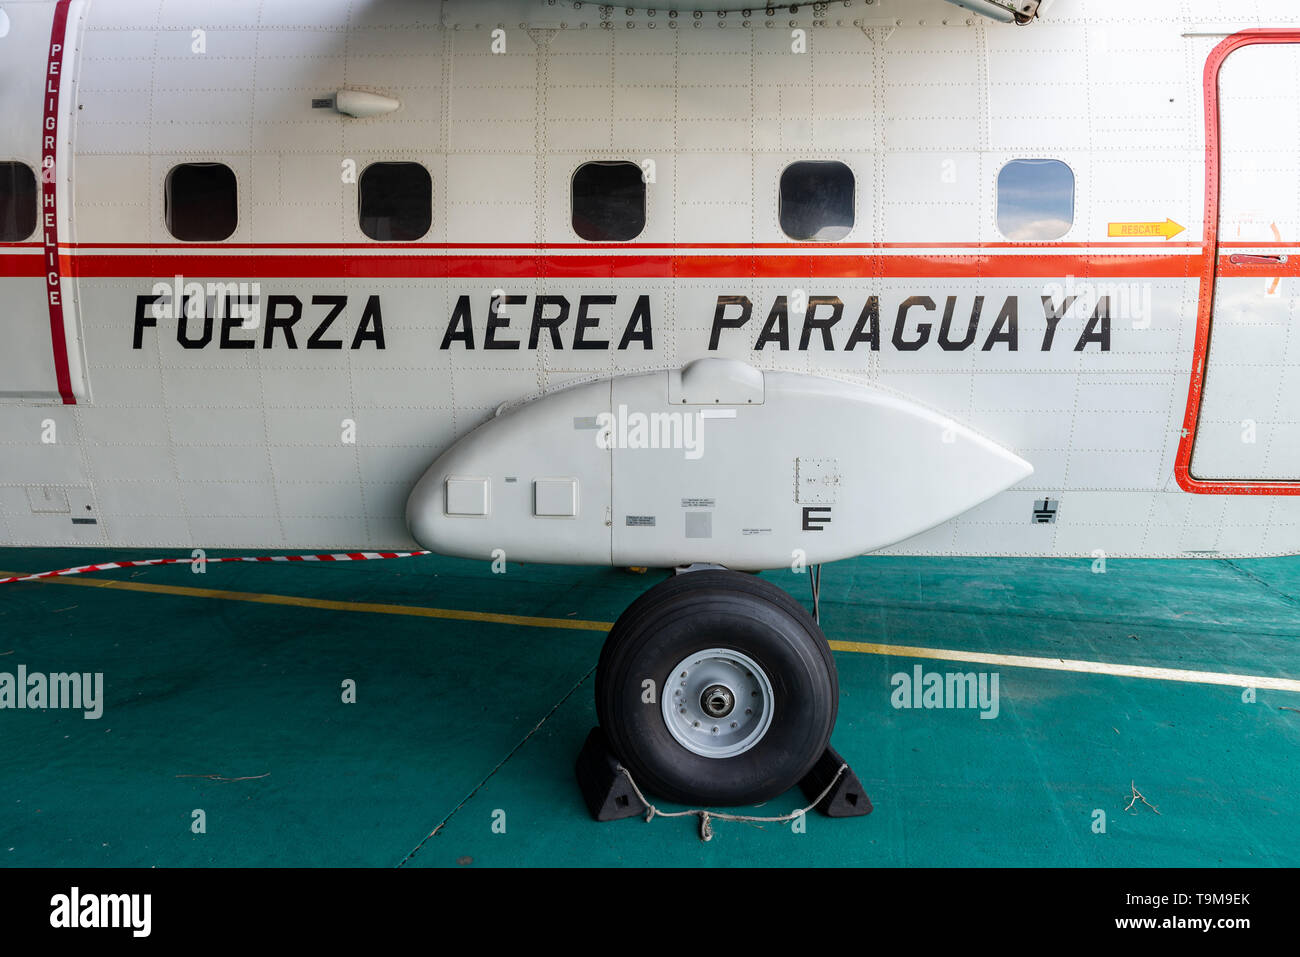 Avión de carga ligera CASA C-212 del Grupo de Airbus se en el hangar de la Fuerza Aerea Paraguaya, Paraguay Foto de stock